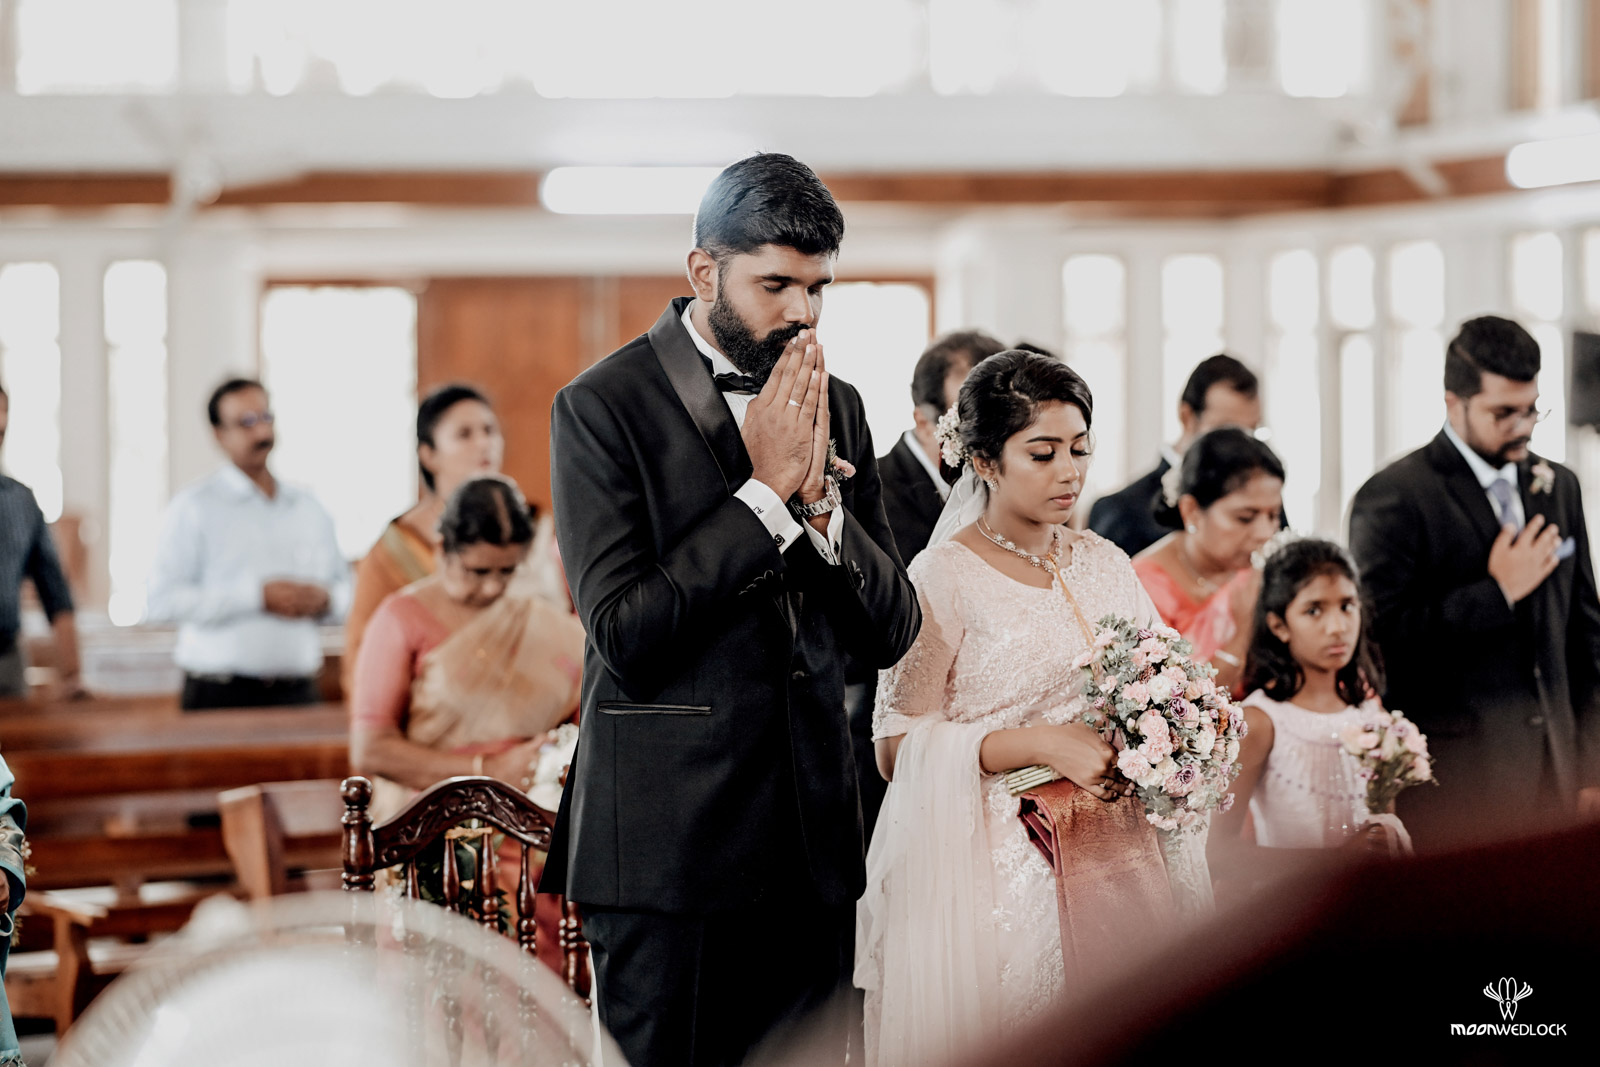 bangalore-christian-wedding-photography-moonwedlock (38)